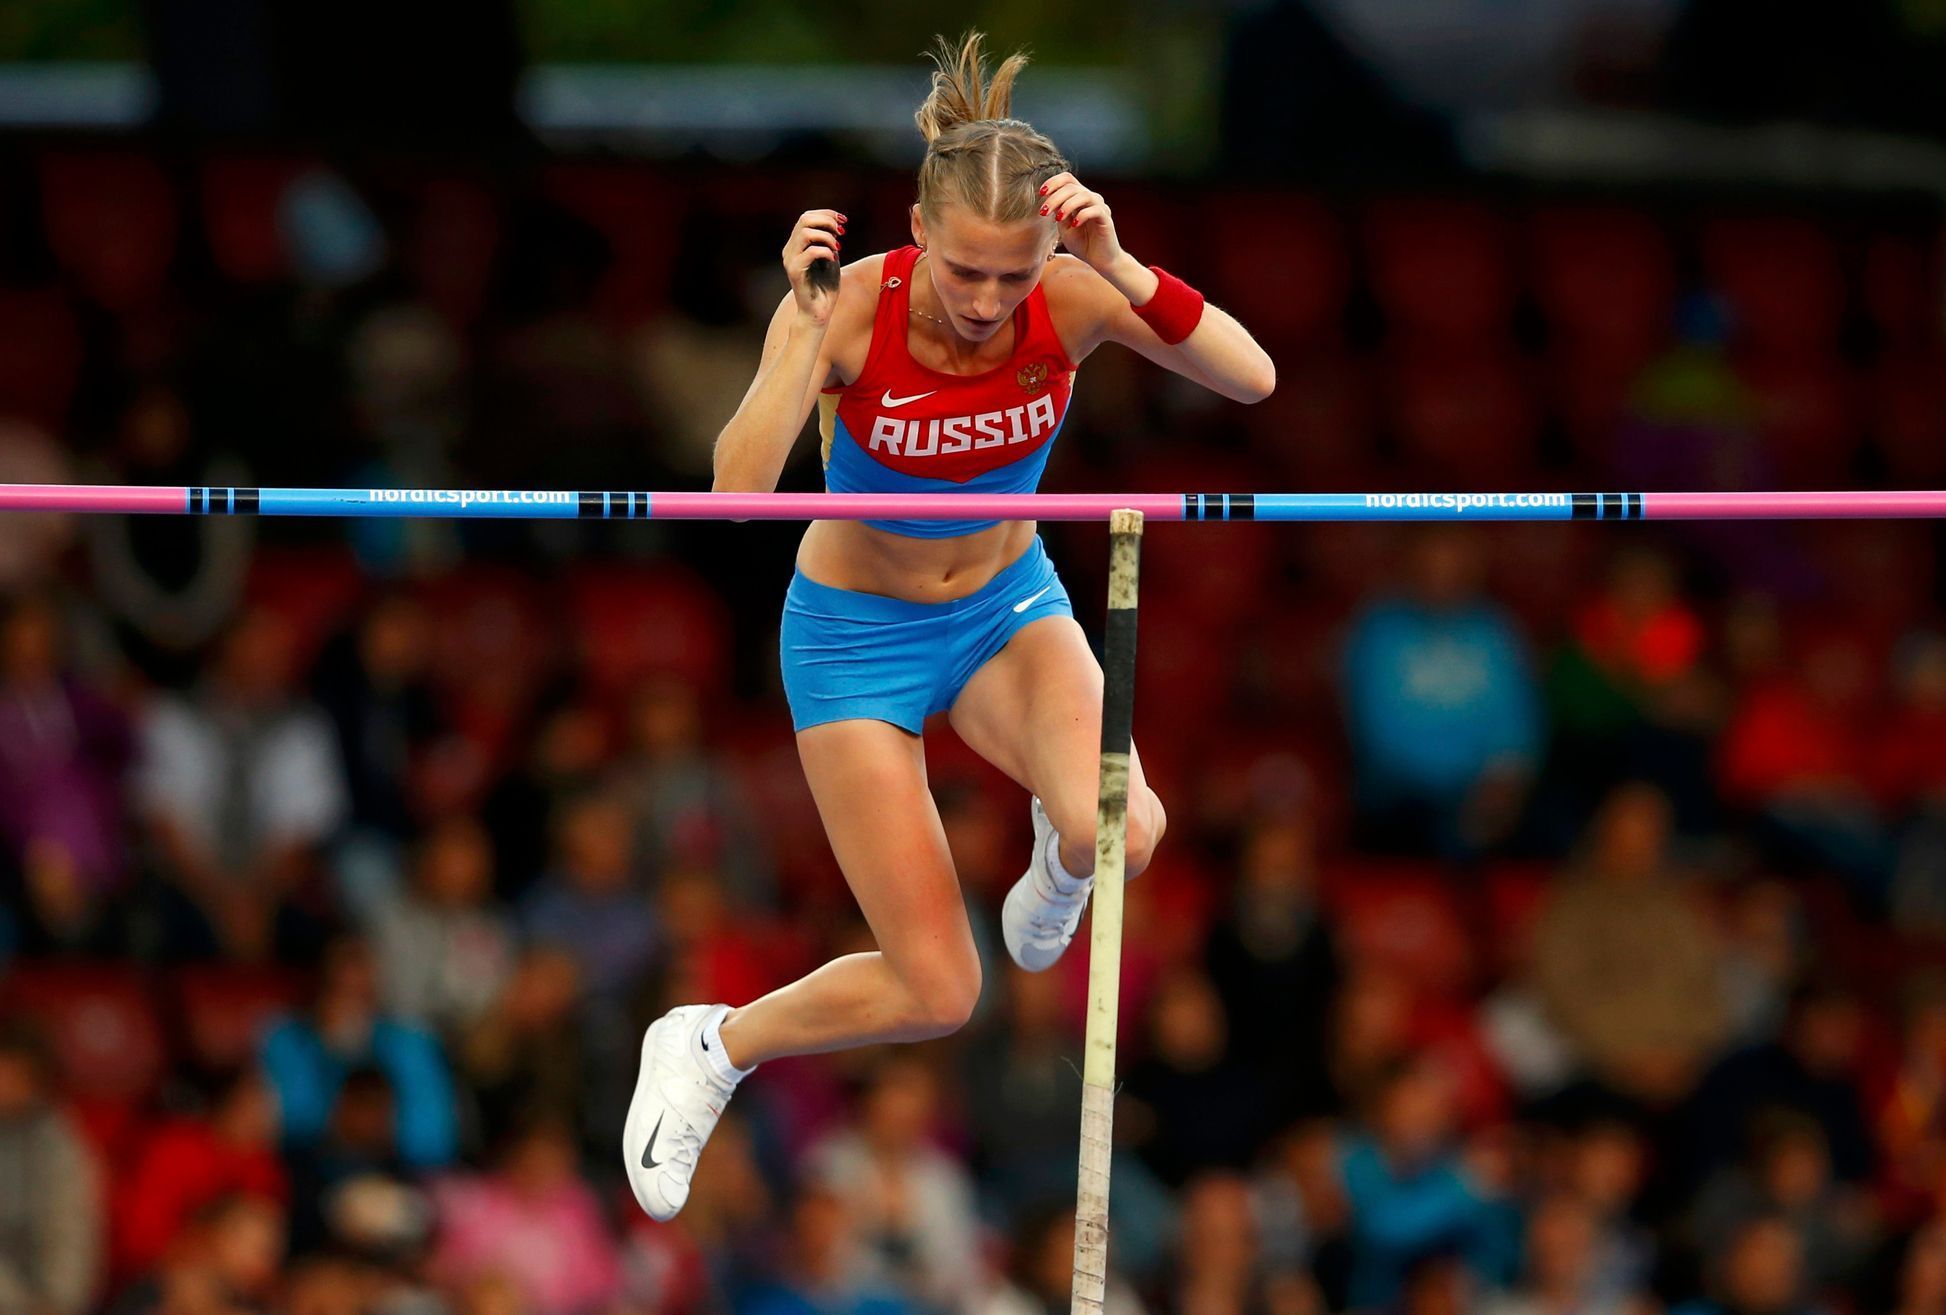 ME v atletice, tyčka žen: Anželika Sidorovová